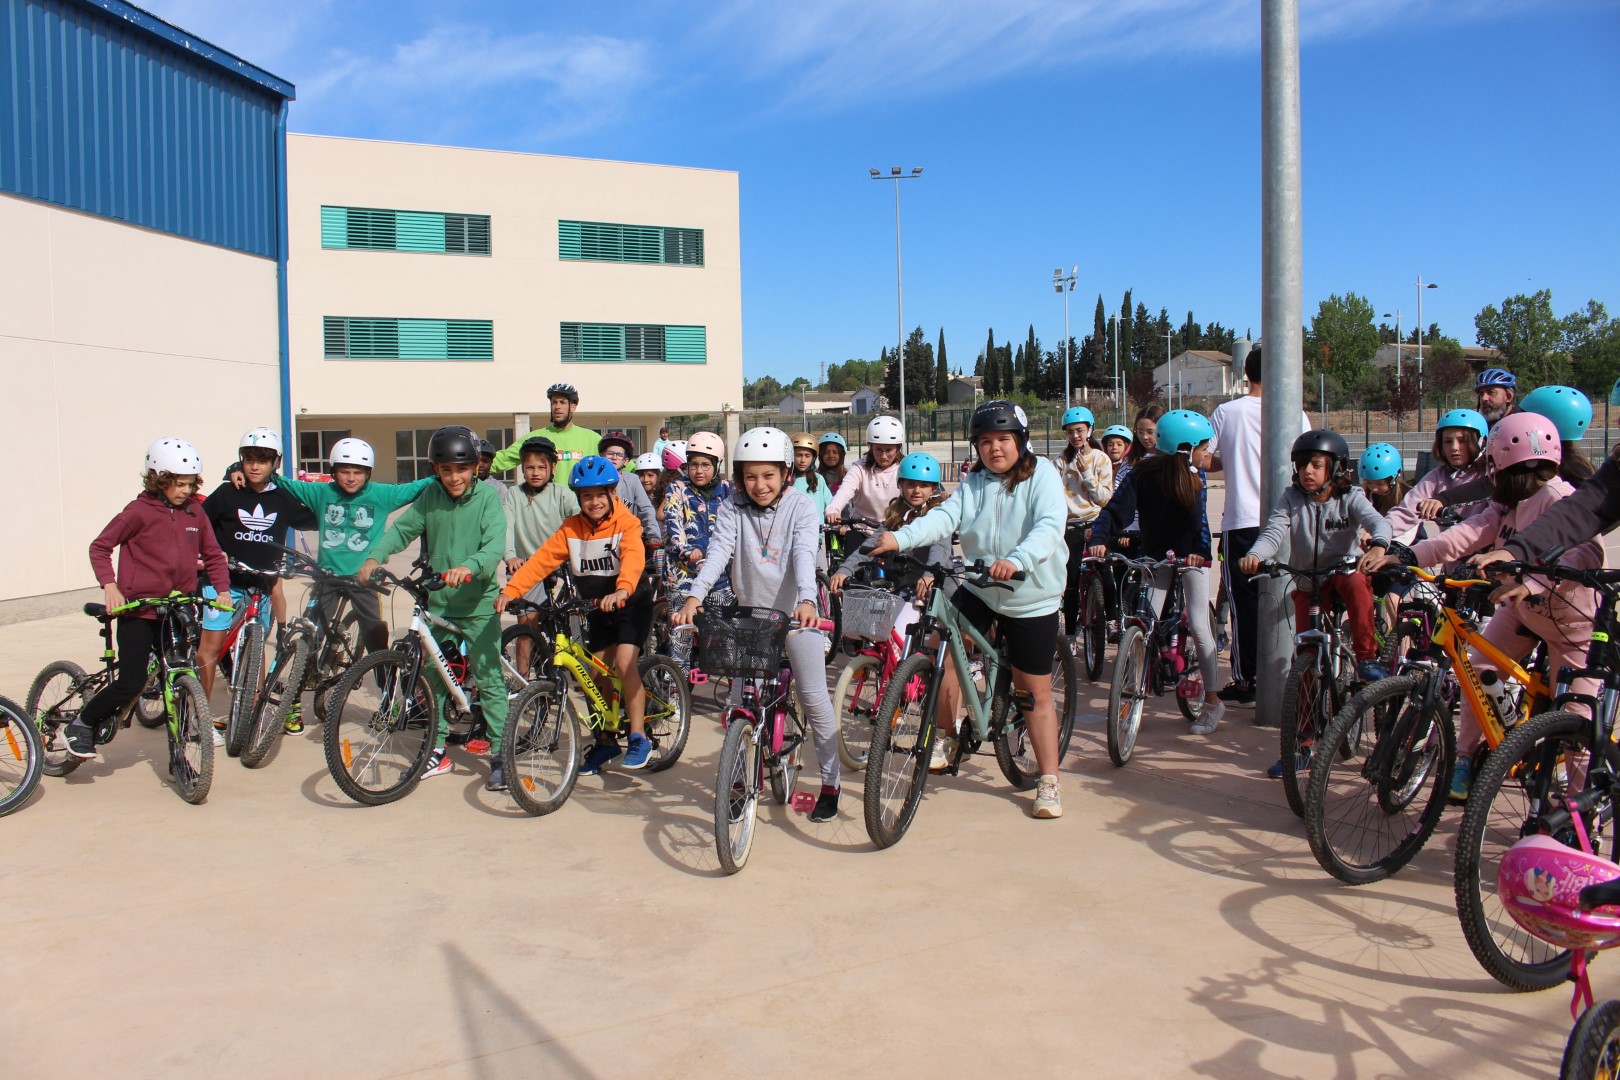 Los escolares de Binéfar aprenden a circular con el programa Aula en Bici que ofrece el Ayuntamiento